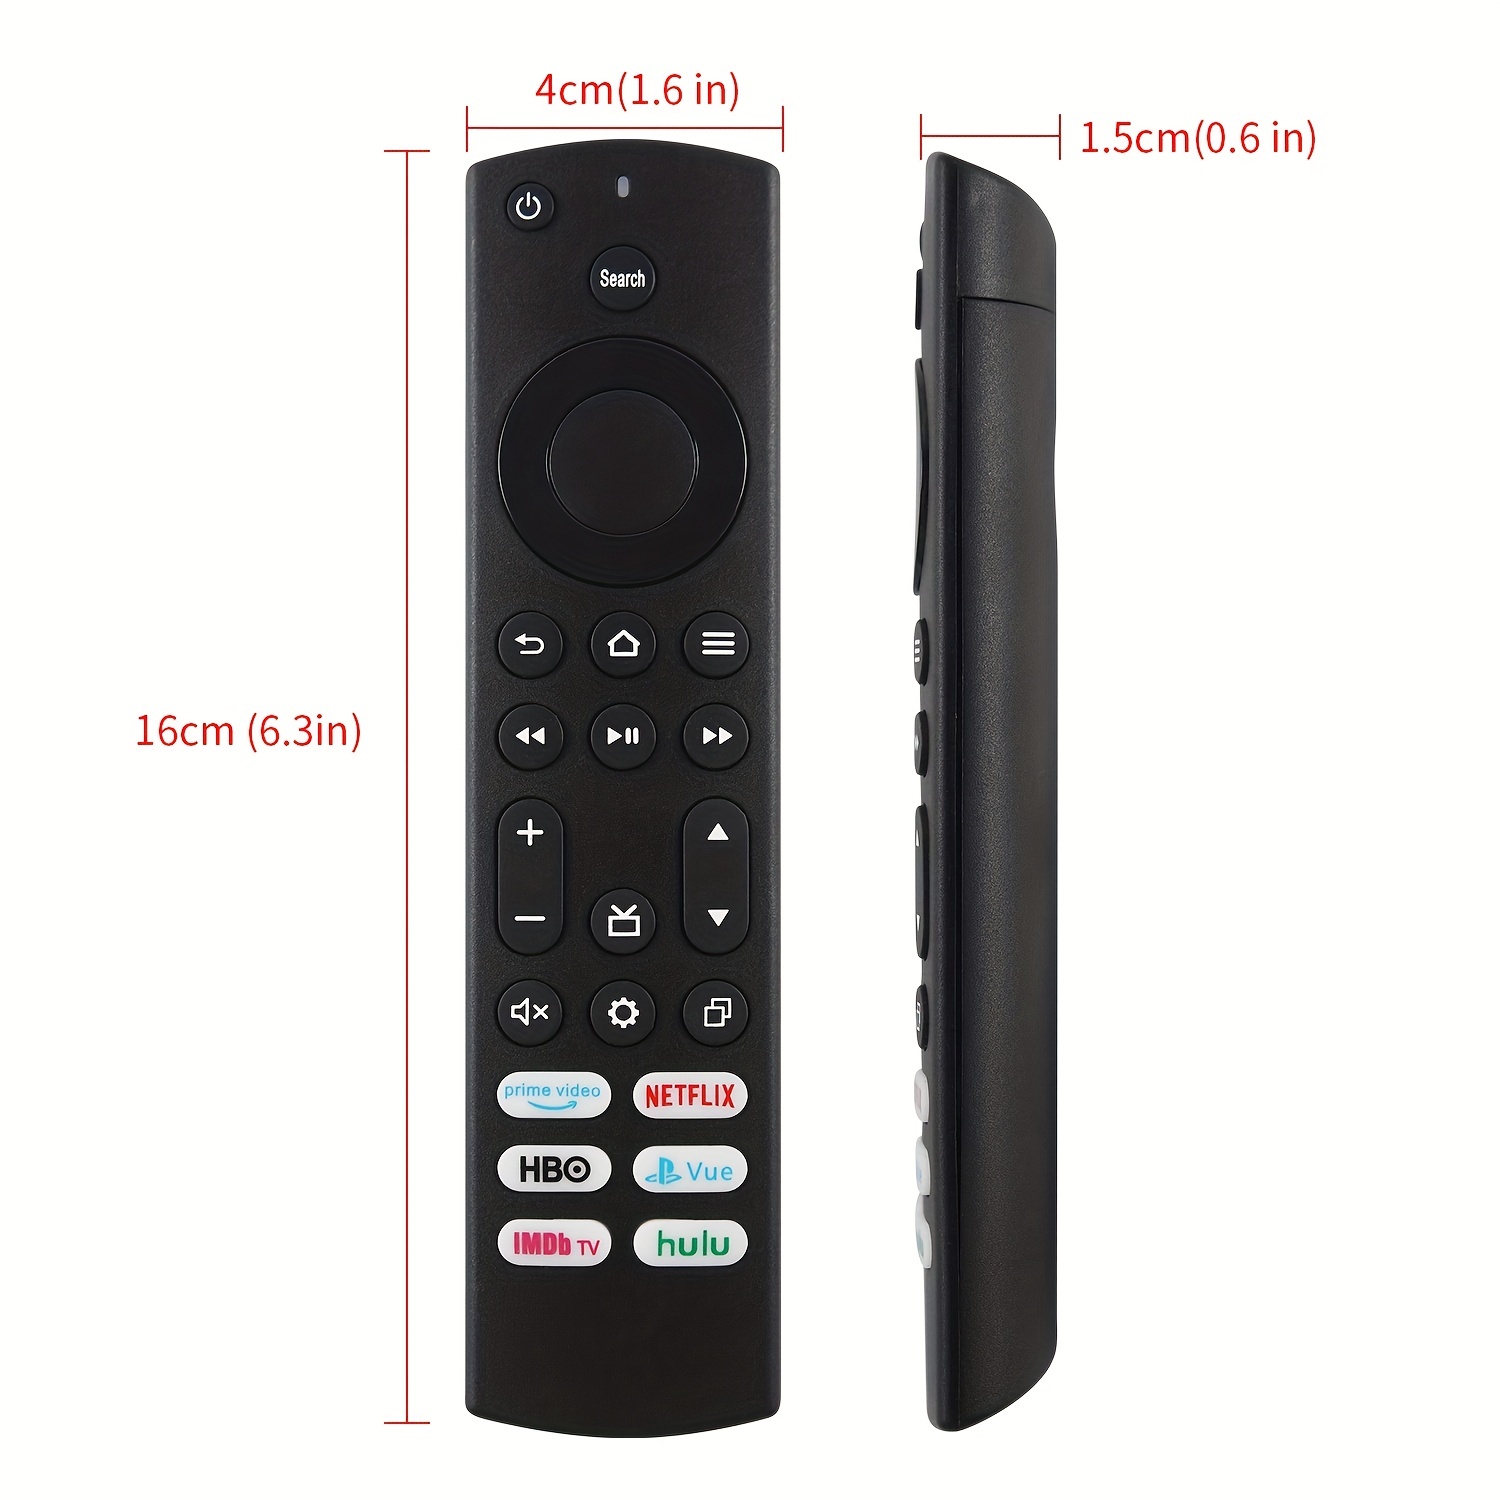 Nuevo mando a distancia de repuesto para televisores Toshiba y televisores  inteligentes Insignia, con 6 botones de acceso directo para un uso fácil y